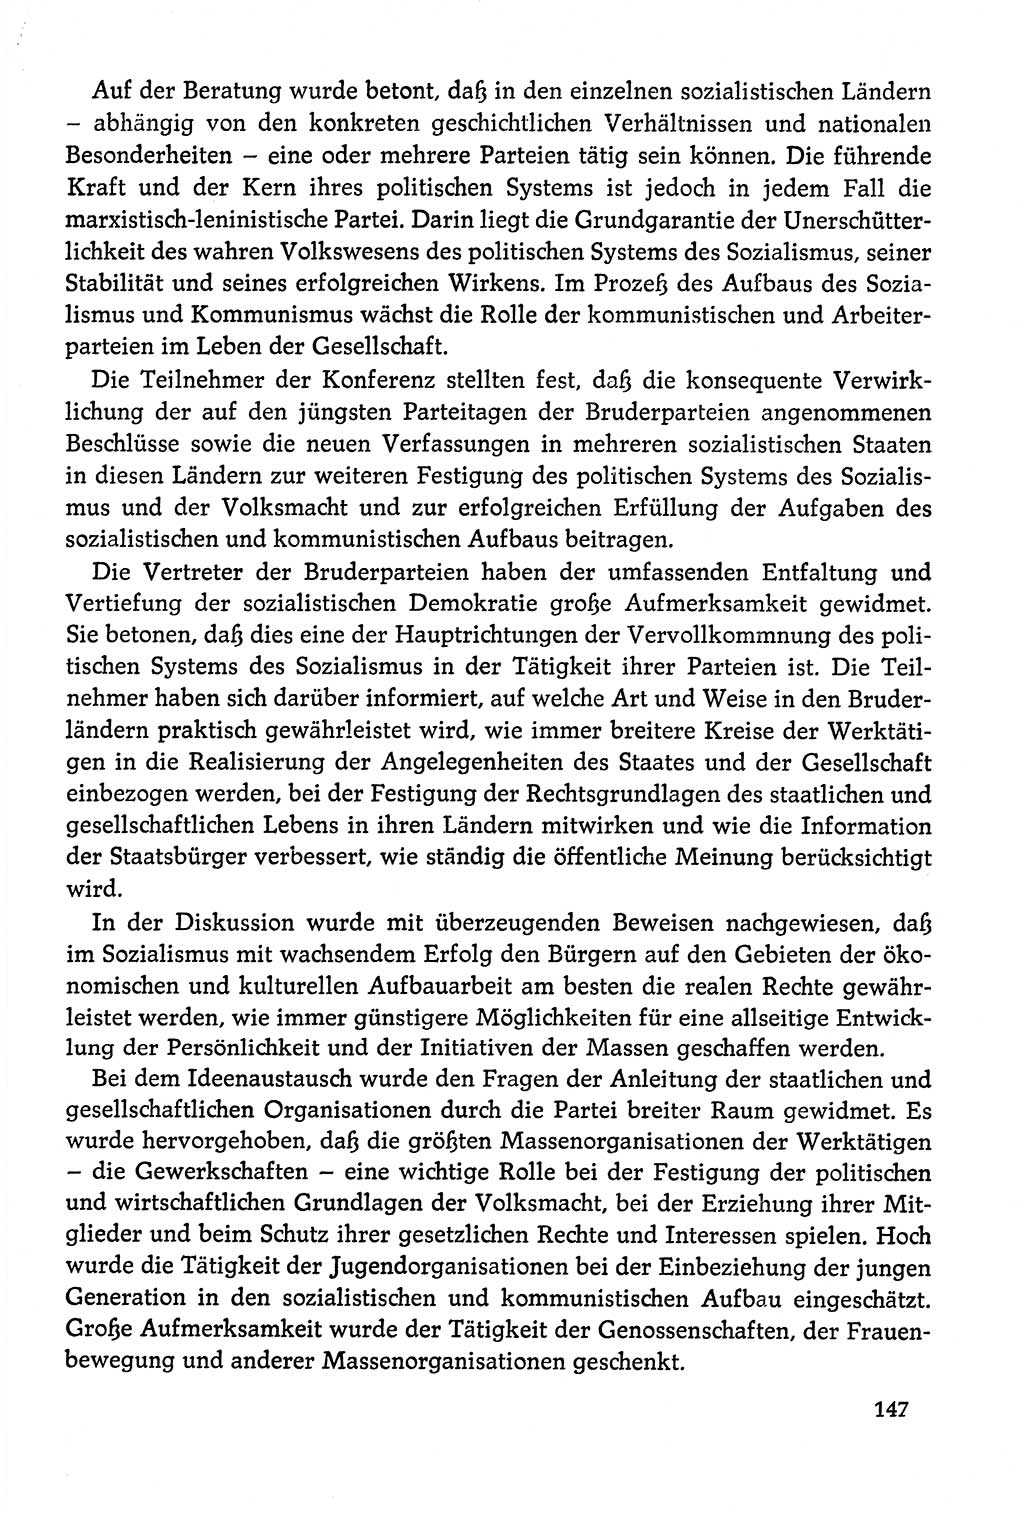 Dokumente der Sozialistischen Einheitspartei Deutschlands (SED) [Deutsche Demokratische Republik (DDR)] 1978-1979, Seite 147 (Dok. SED DDR 1978-1979, S. 147)